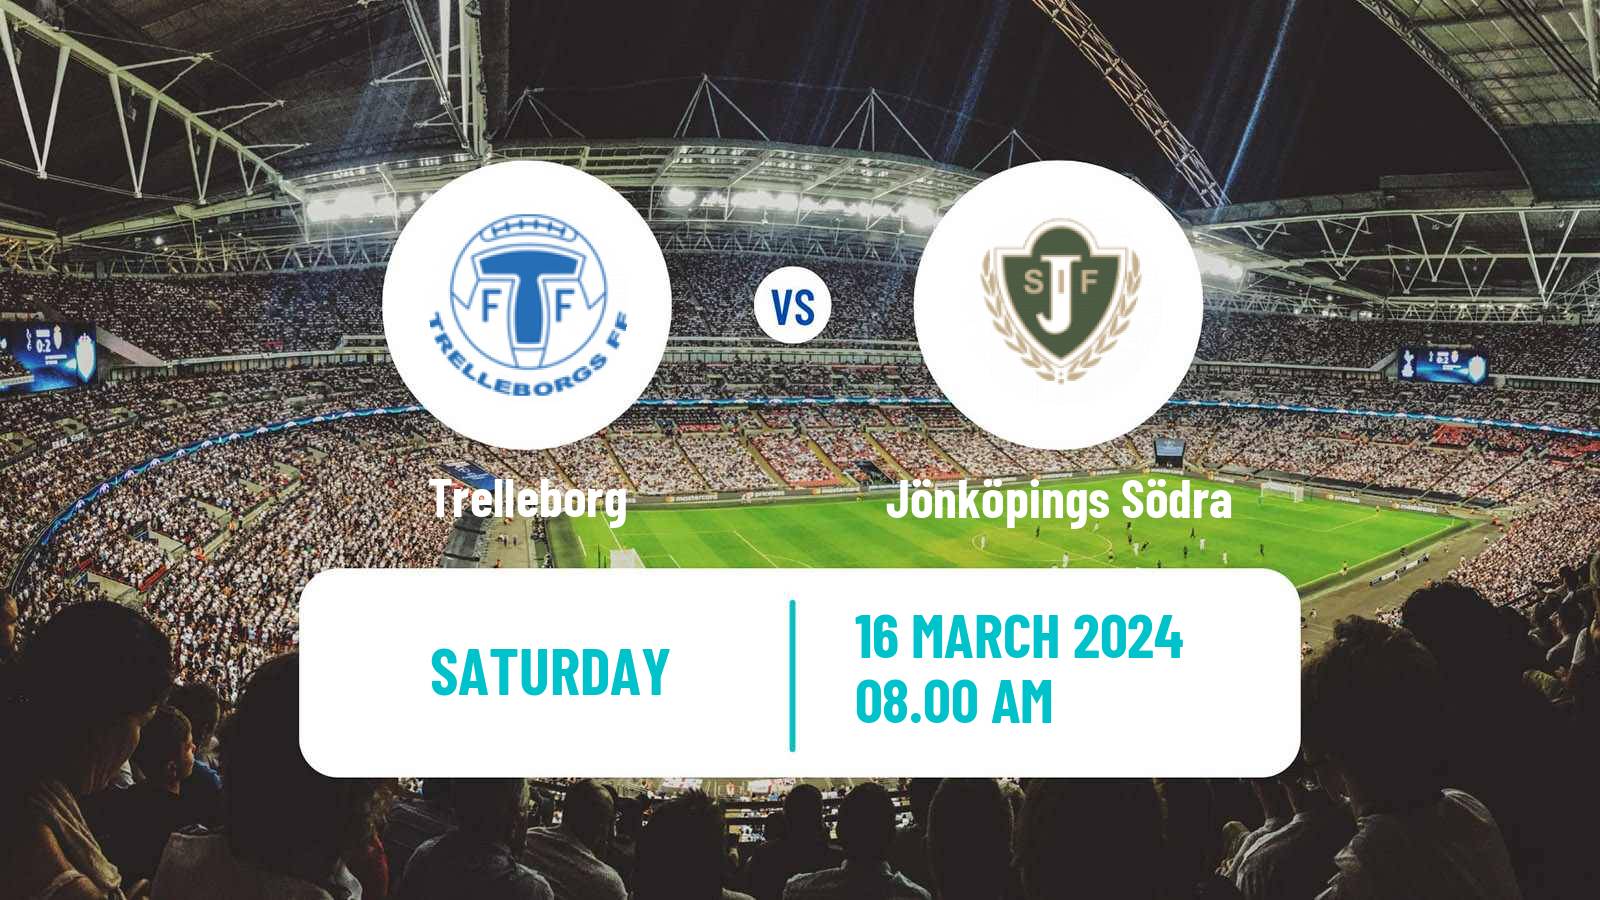 Soccer Club Friendly Trelleborg - Jönköpings Södra